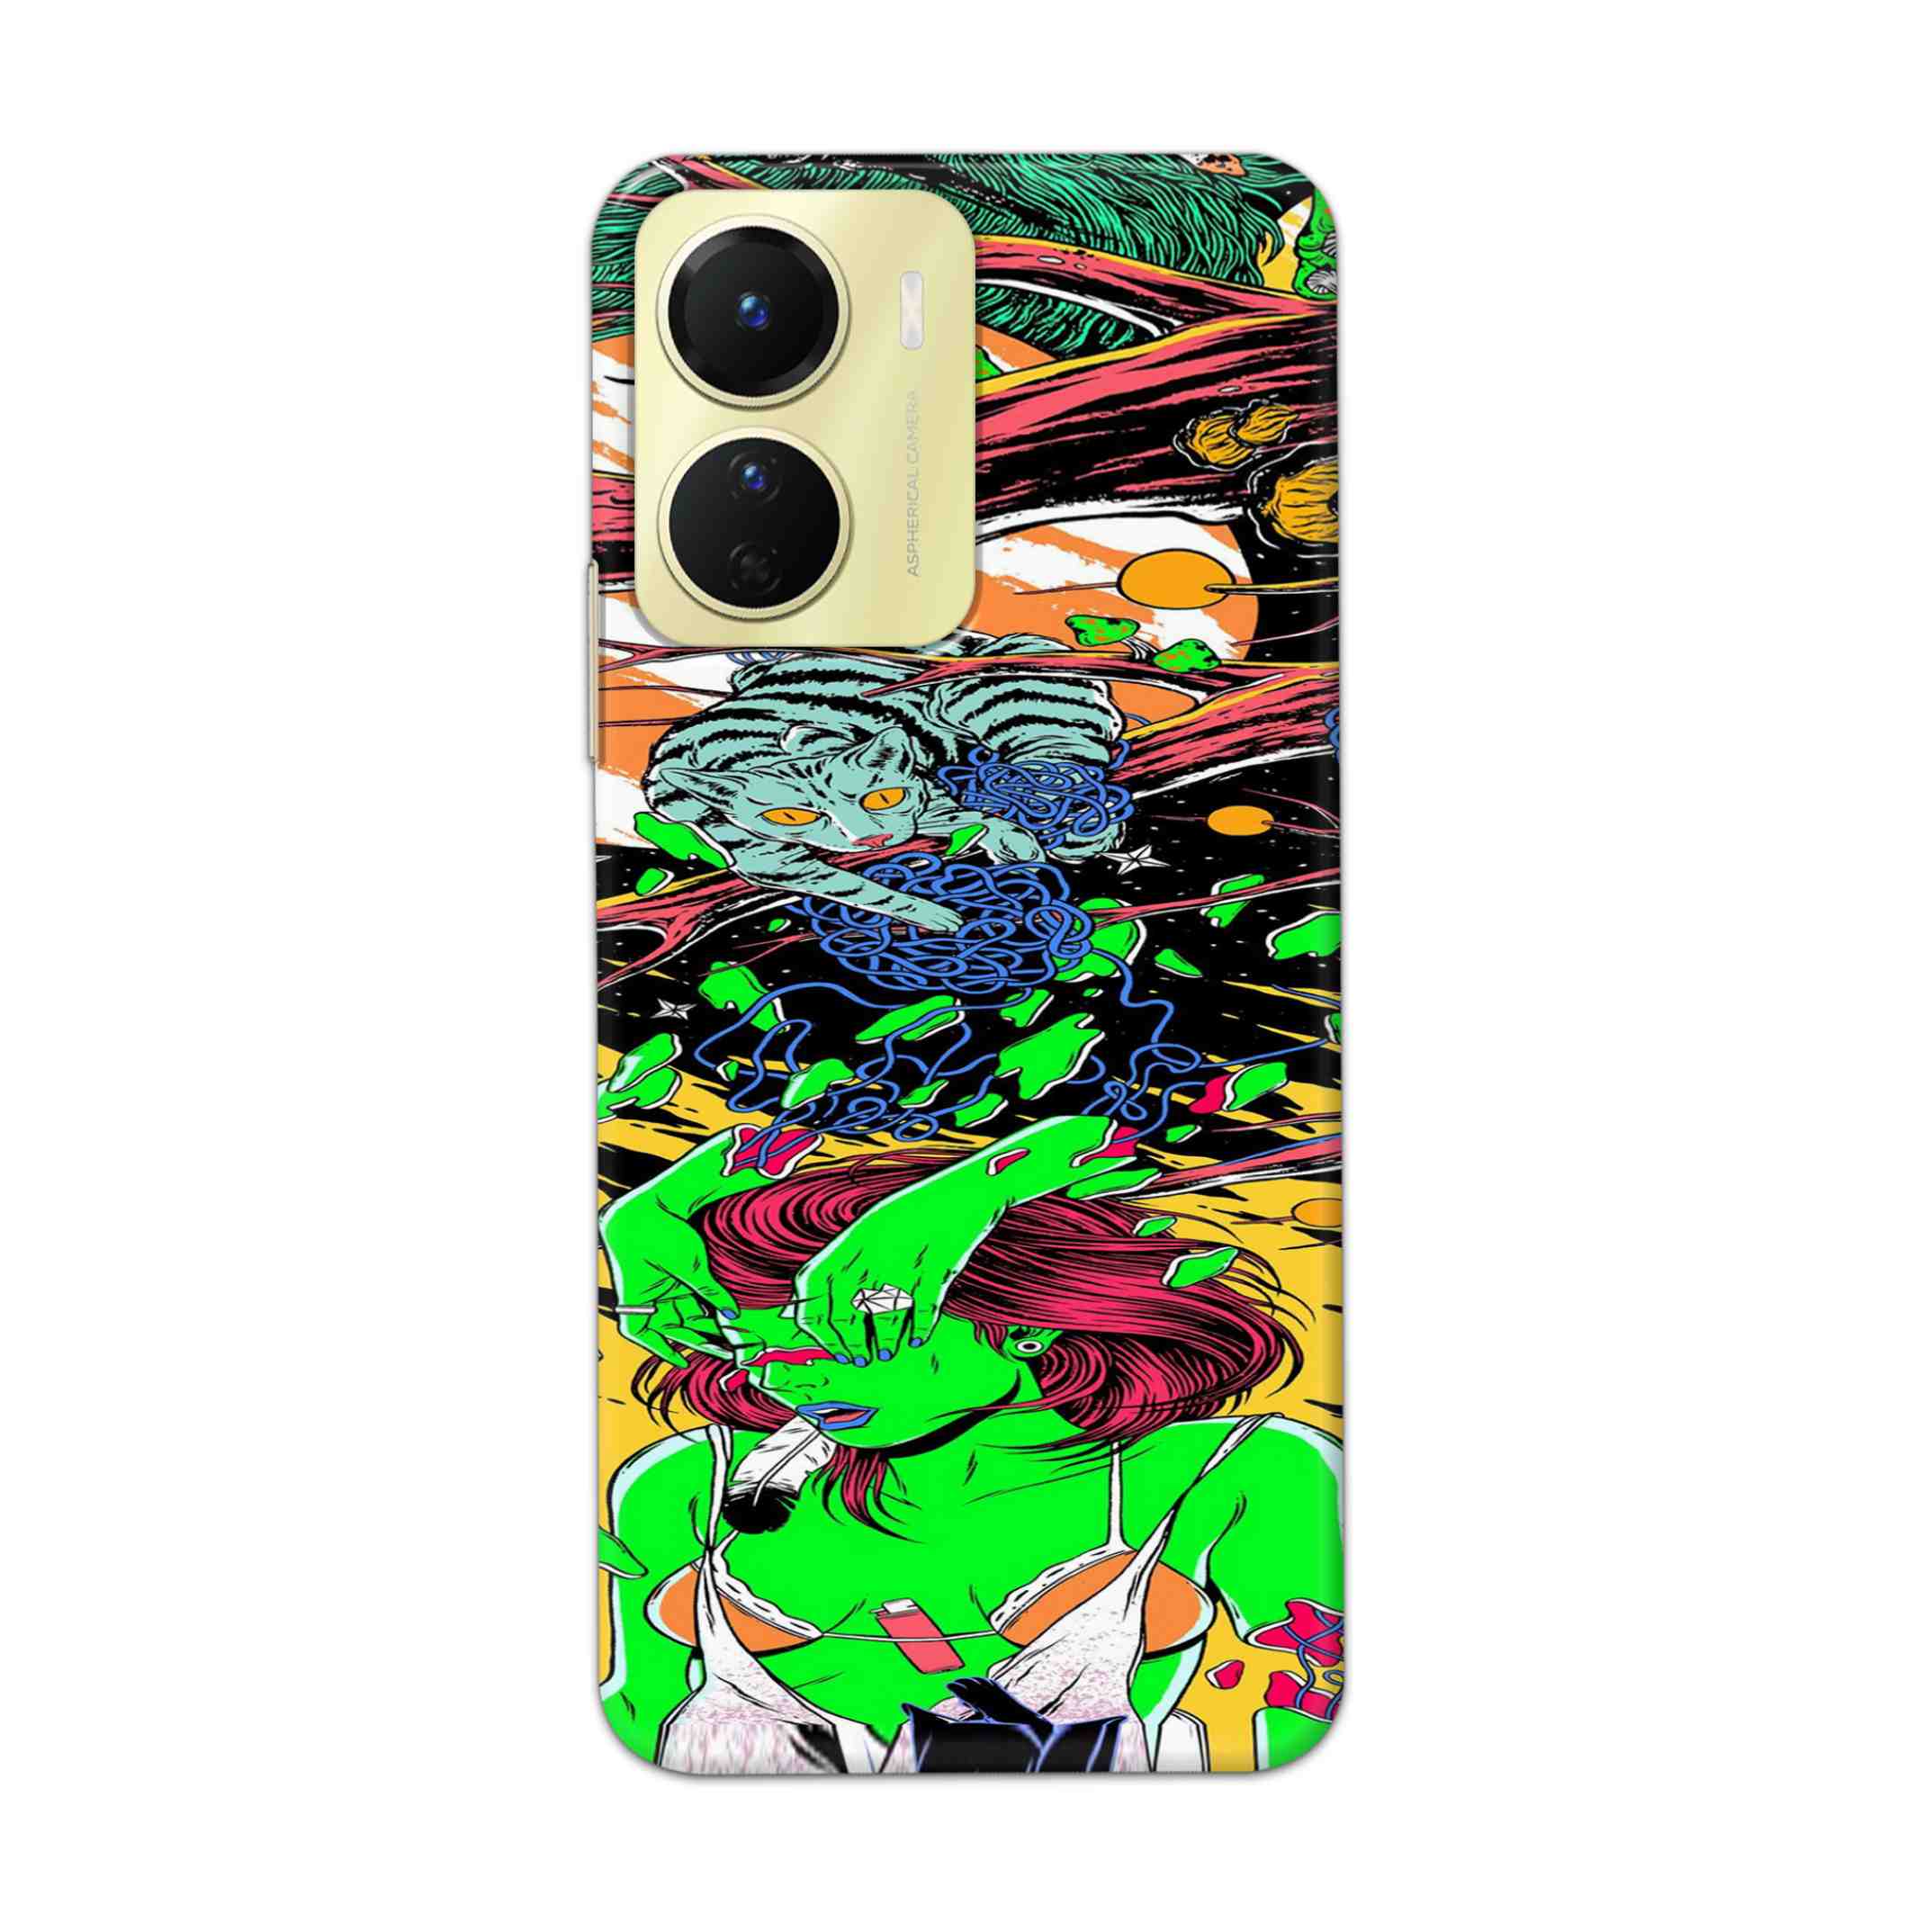 Buy Green Girl Art Hard Back Mobile Phone Case Cover For Vivo Y16 Online